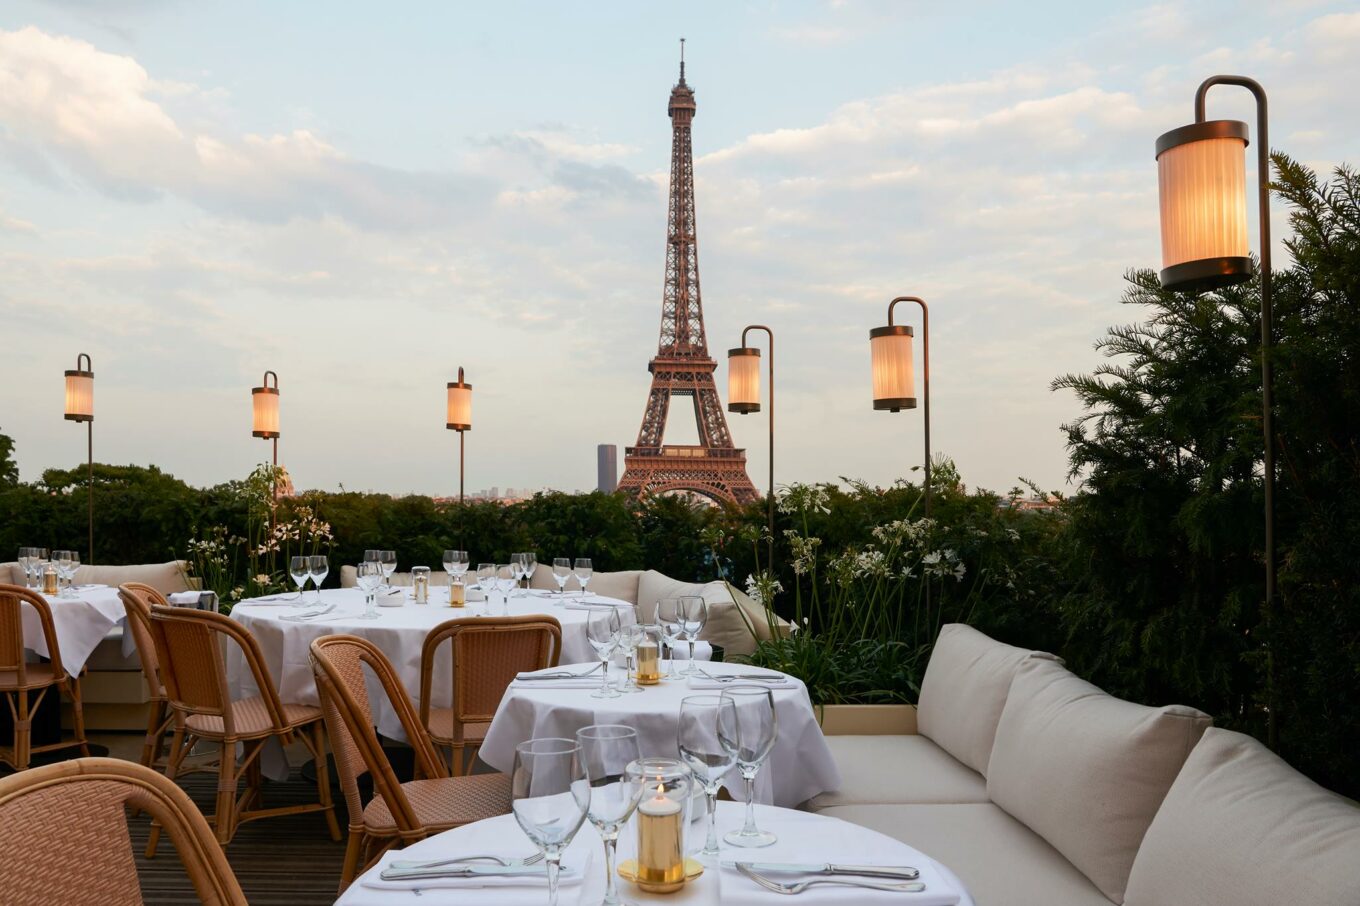 Goedkoop eten Eiffeltoren - Italiaans restaurant Eiffeltoren - restaurant met zicht op de Eiffeltoren - eten in de Eiffeltoren